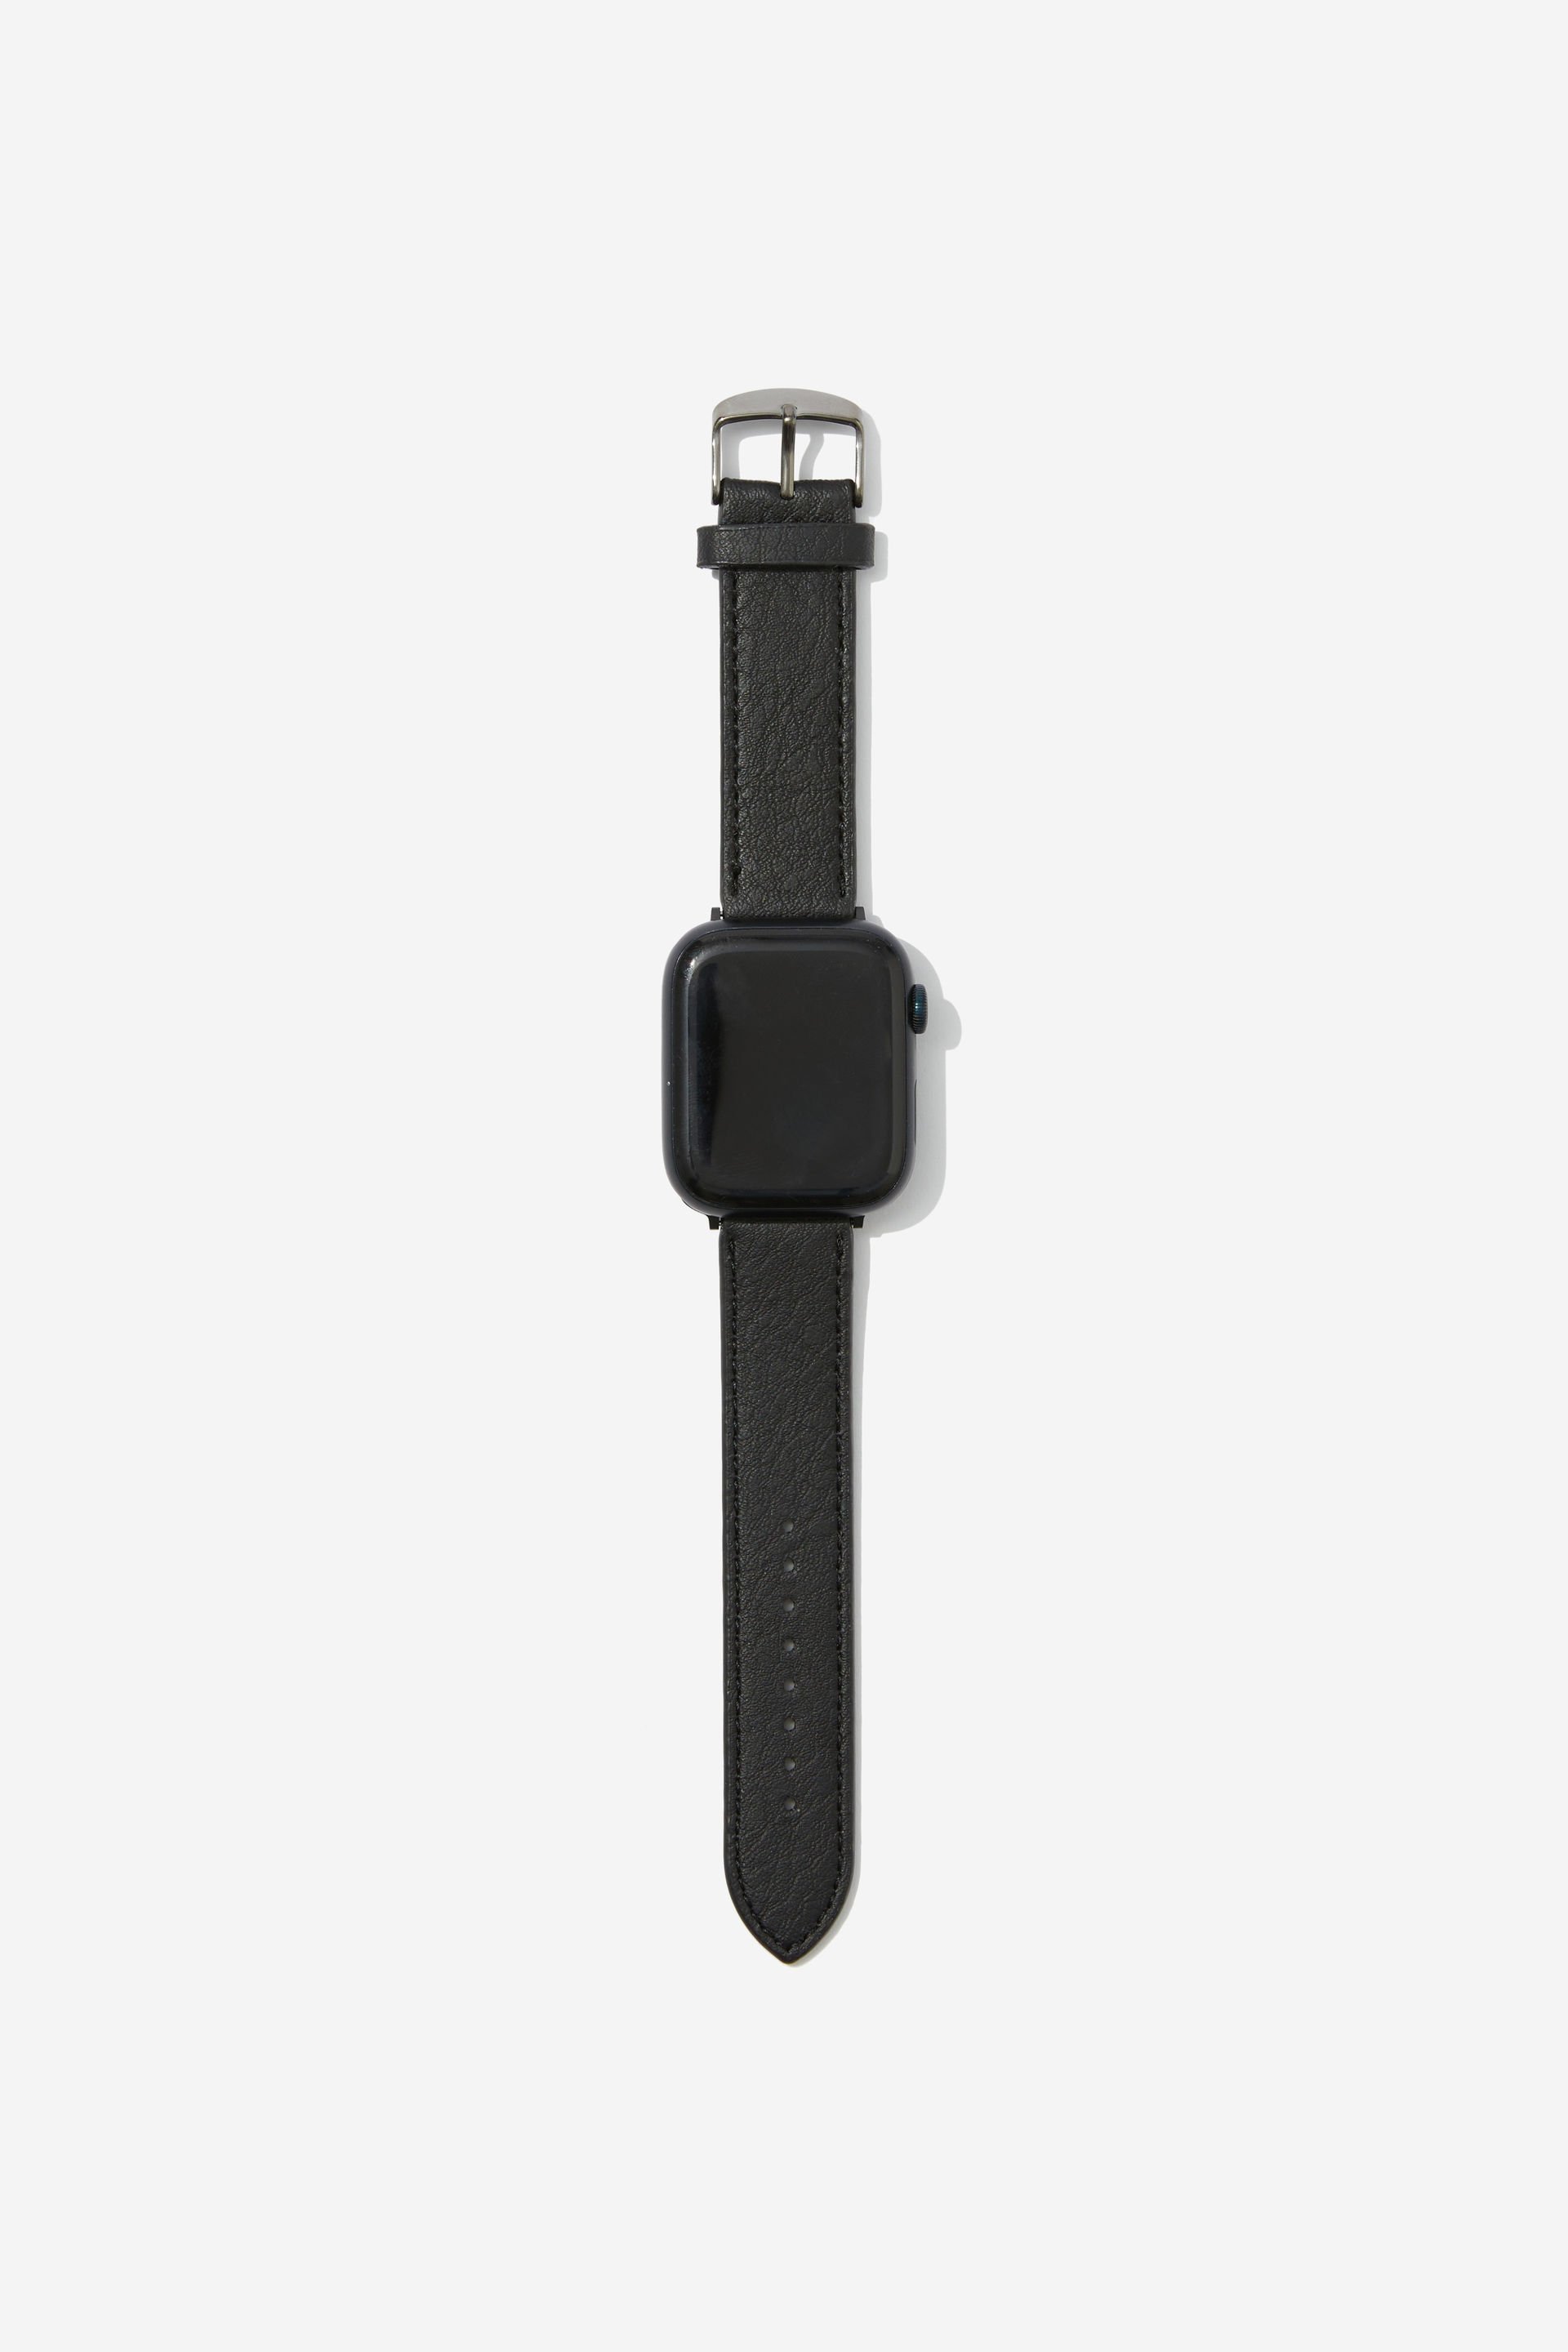 Typo - Buffalo Smart Watch Band 38-40Mm - Black